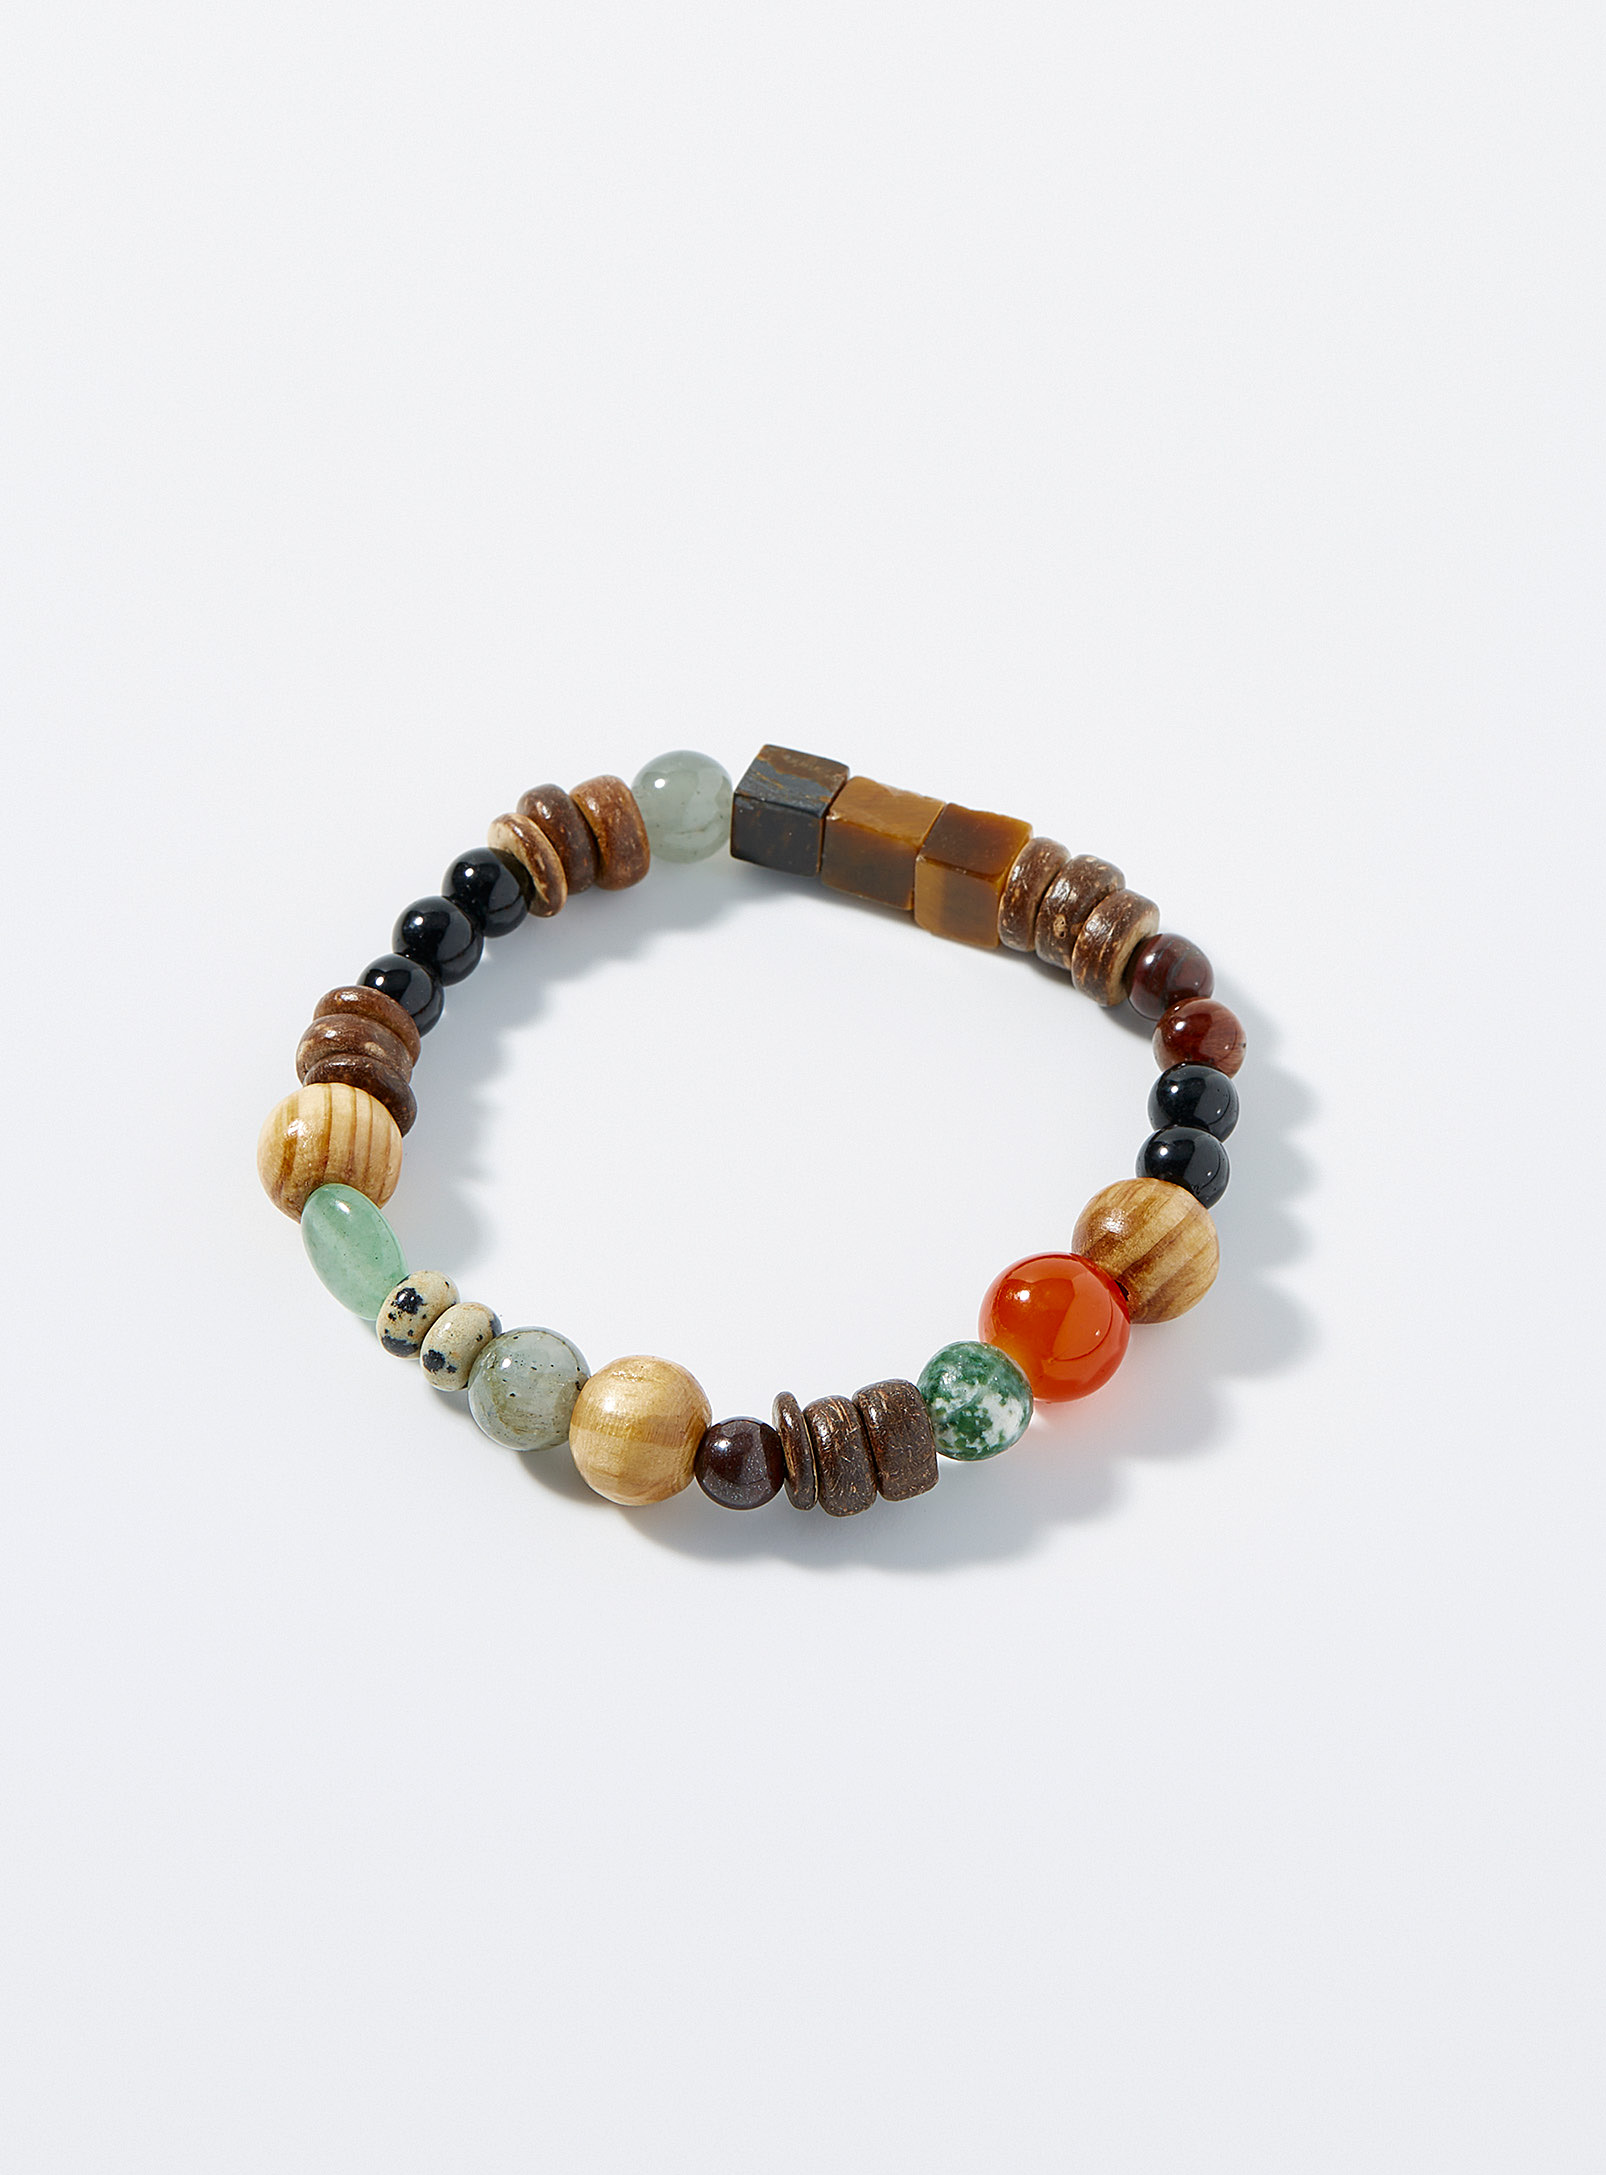 Simons - Le bracelet billes de bois et pierres colorées